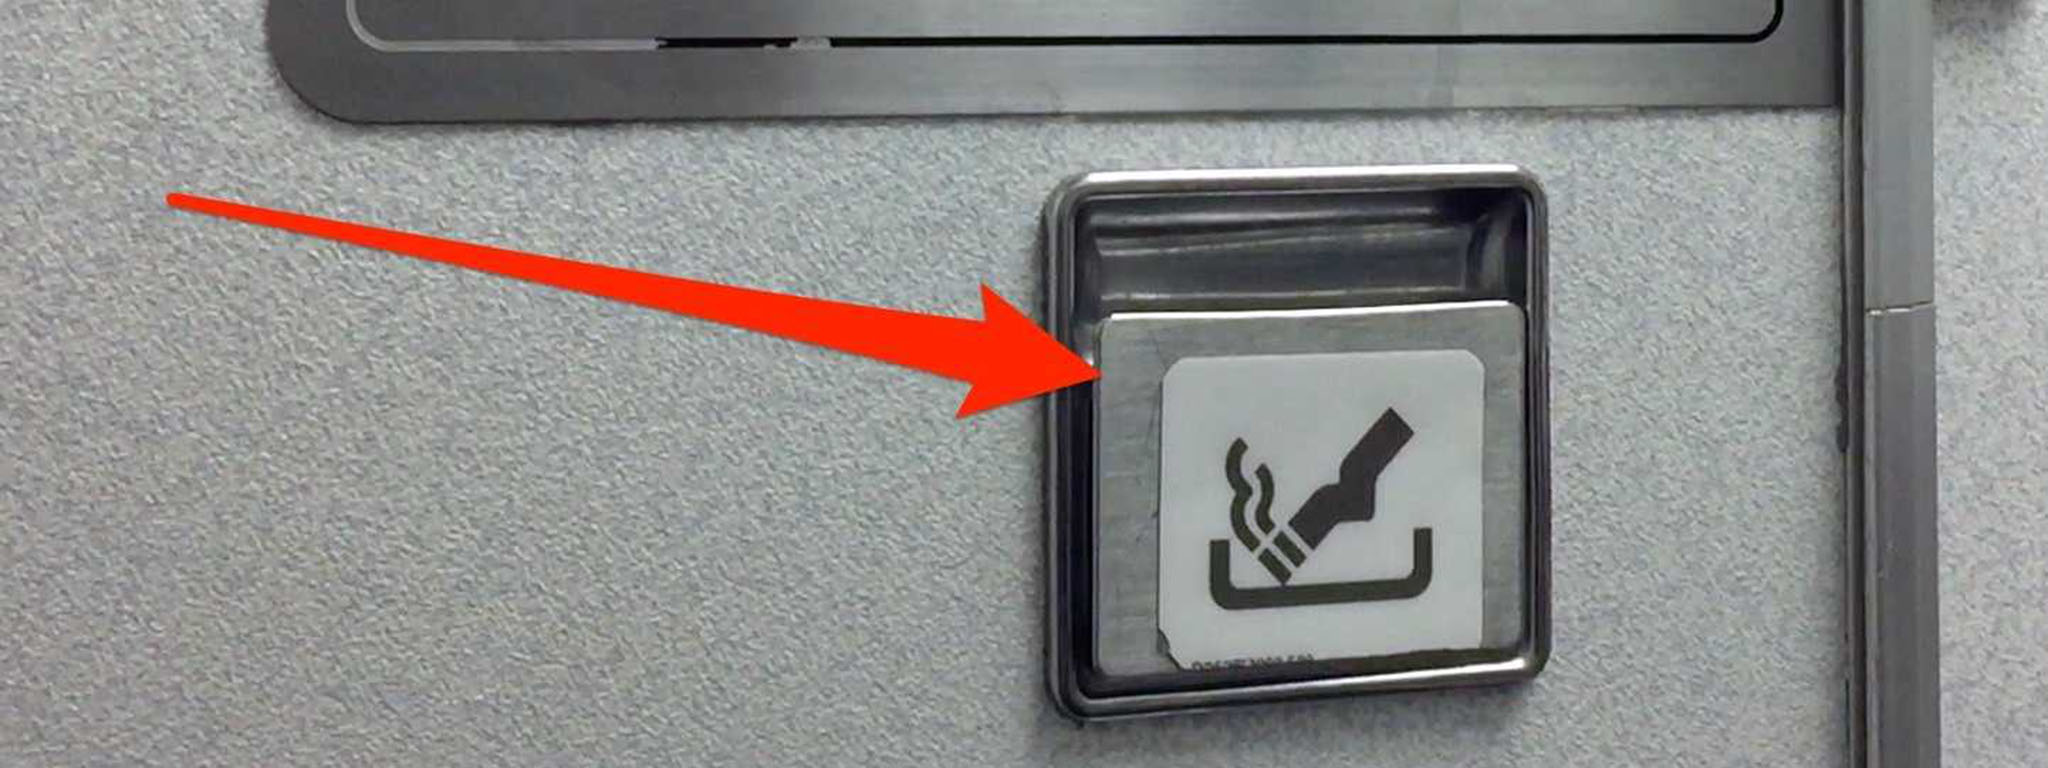 Tại sao vẫn có gạt tàn trong nhà vệ sinh máy bay trong khi hút thuốc bị cấm?